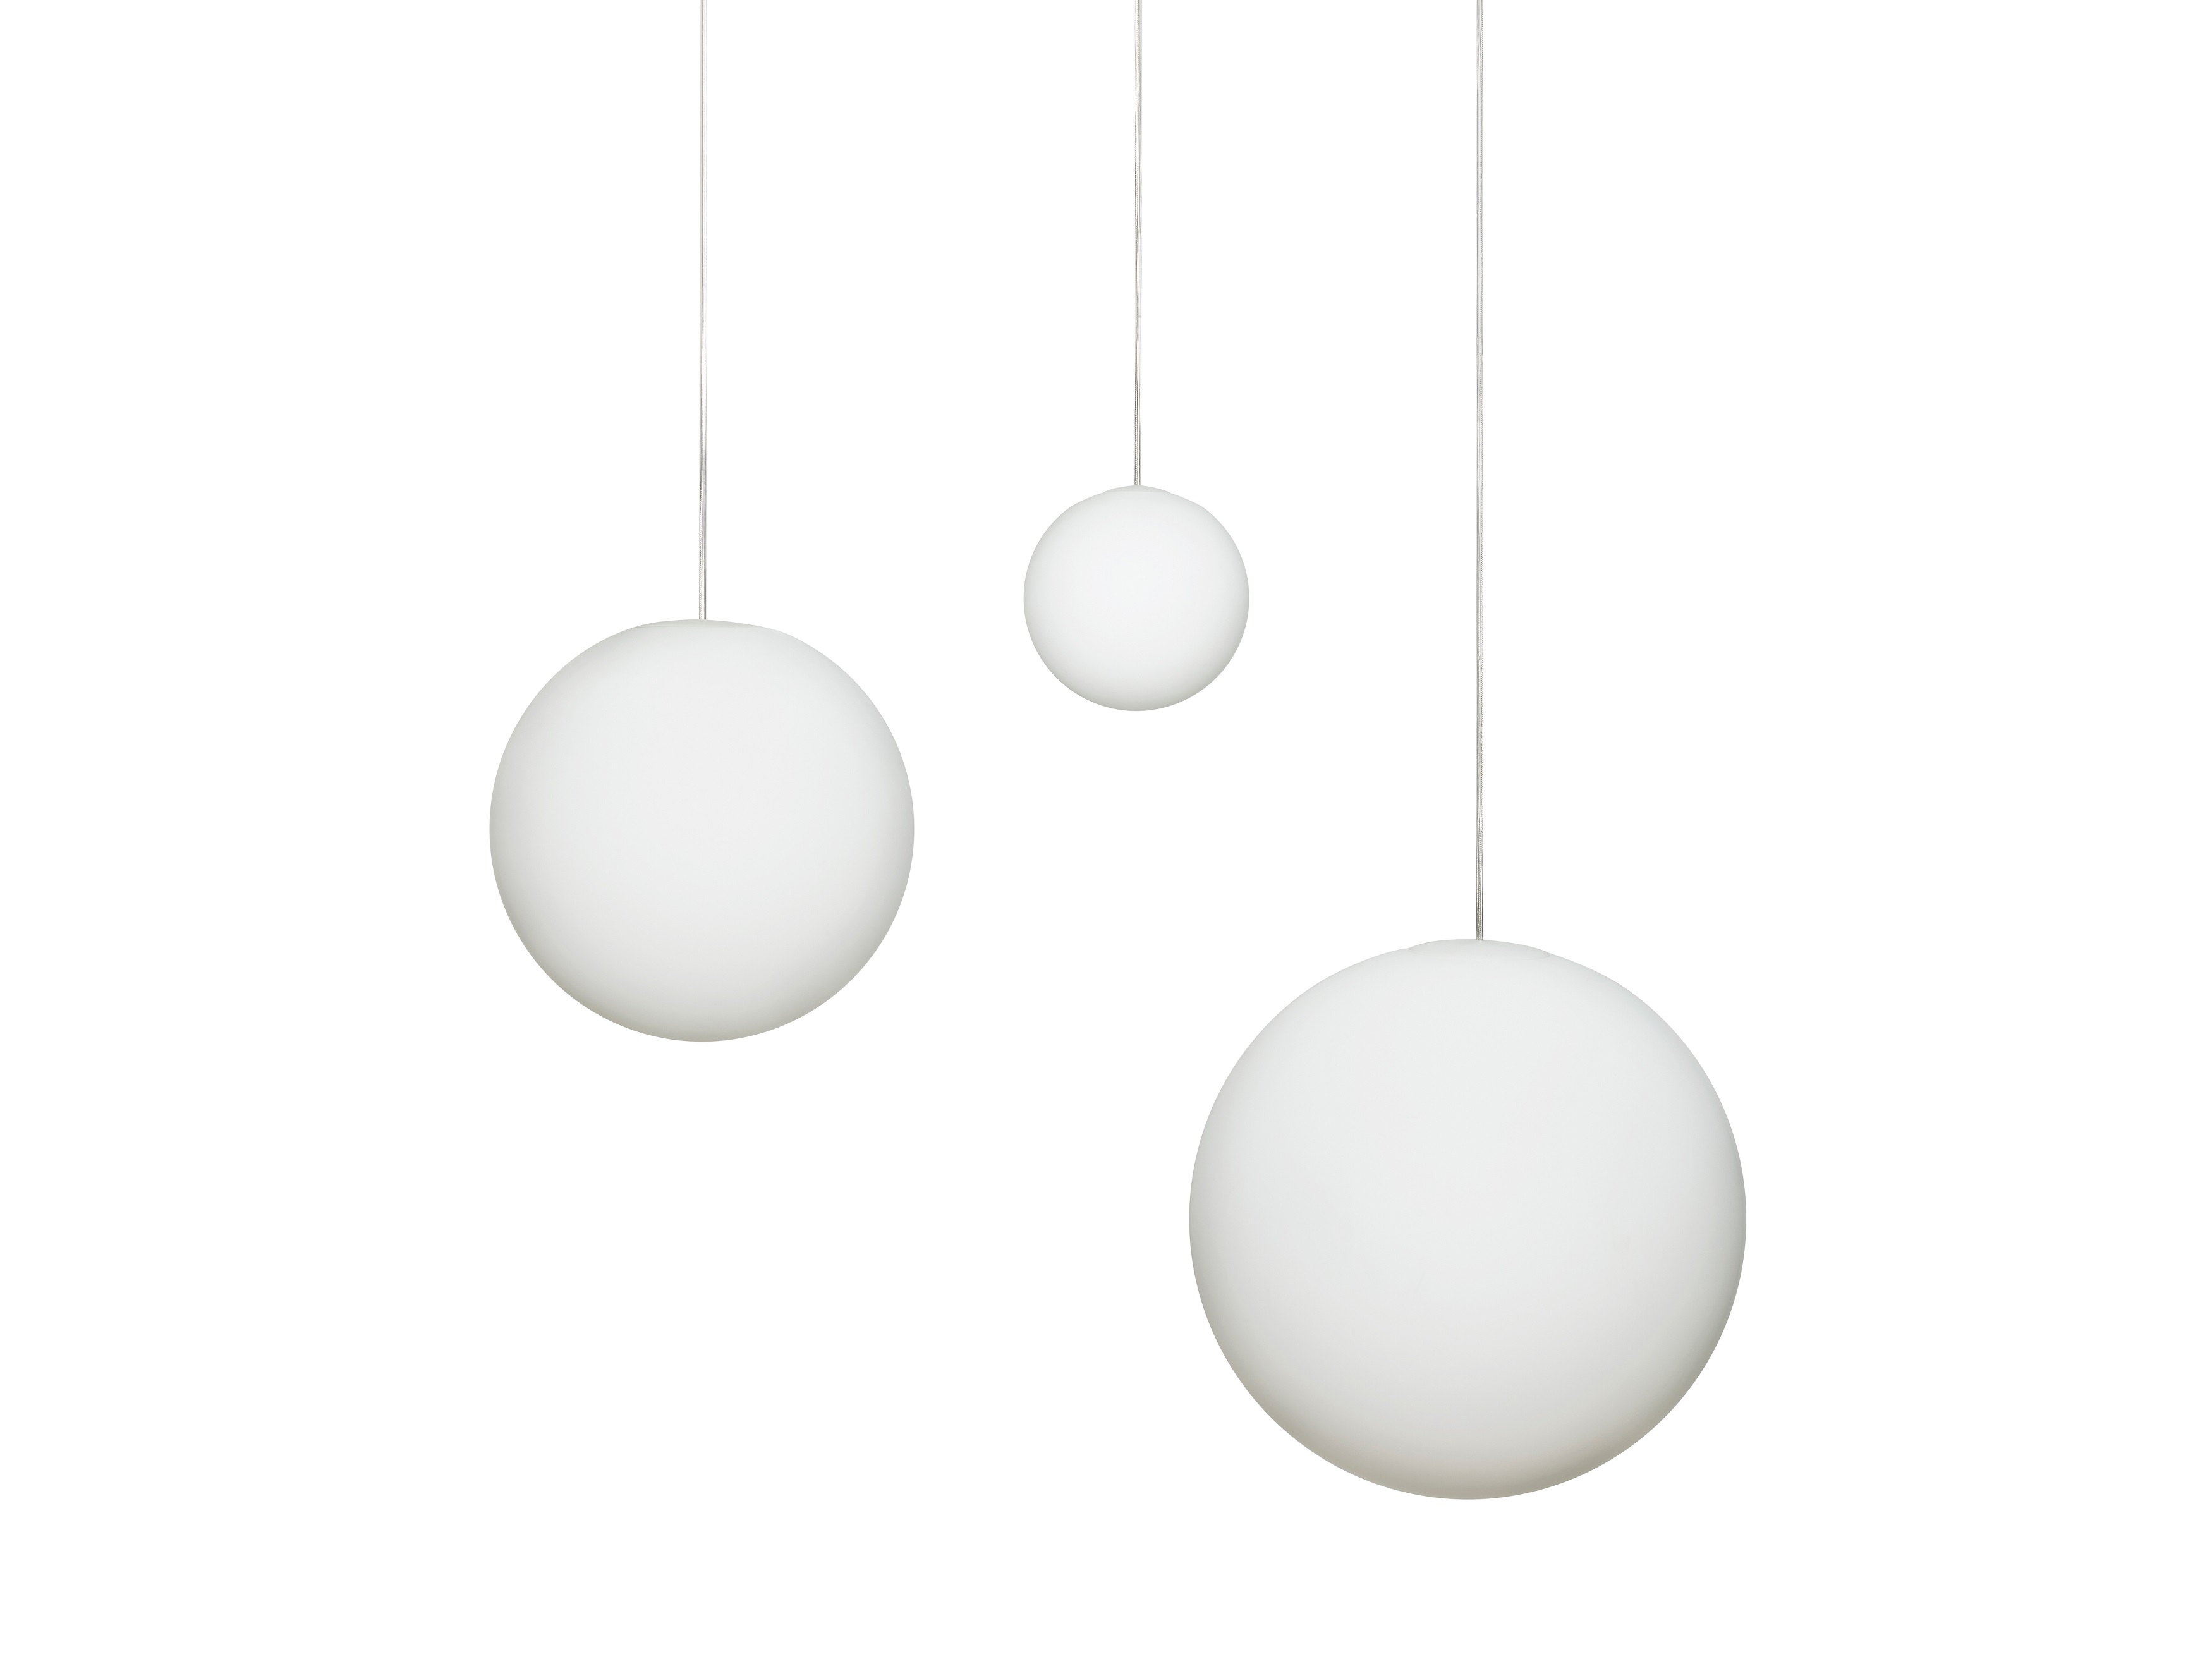 Suspension Lamp Luna Design House Stockholm Medium White 30 cm